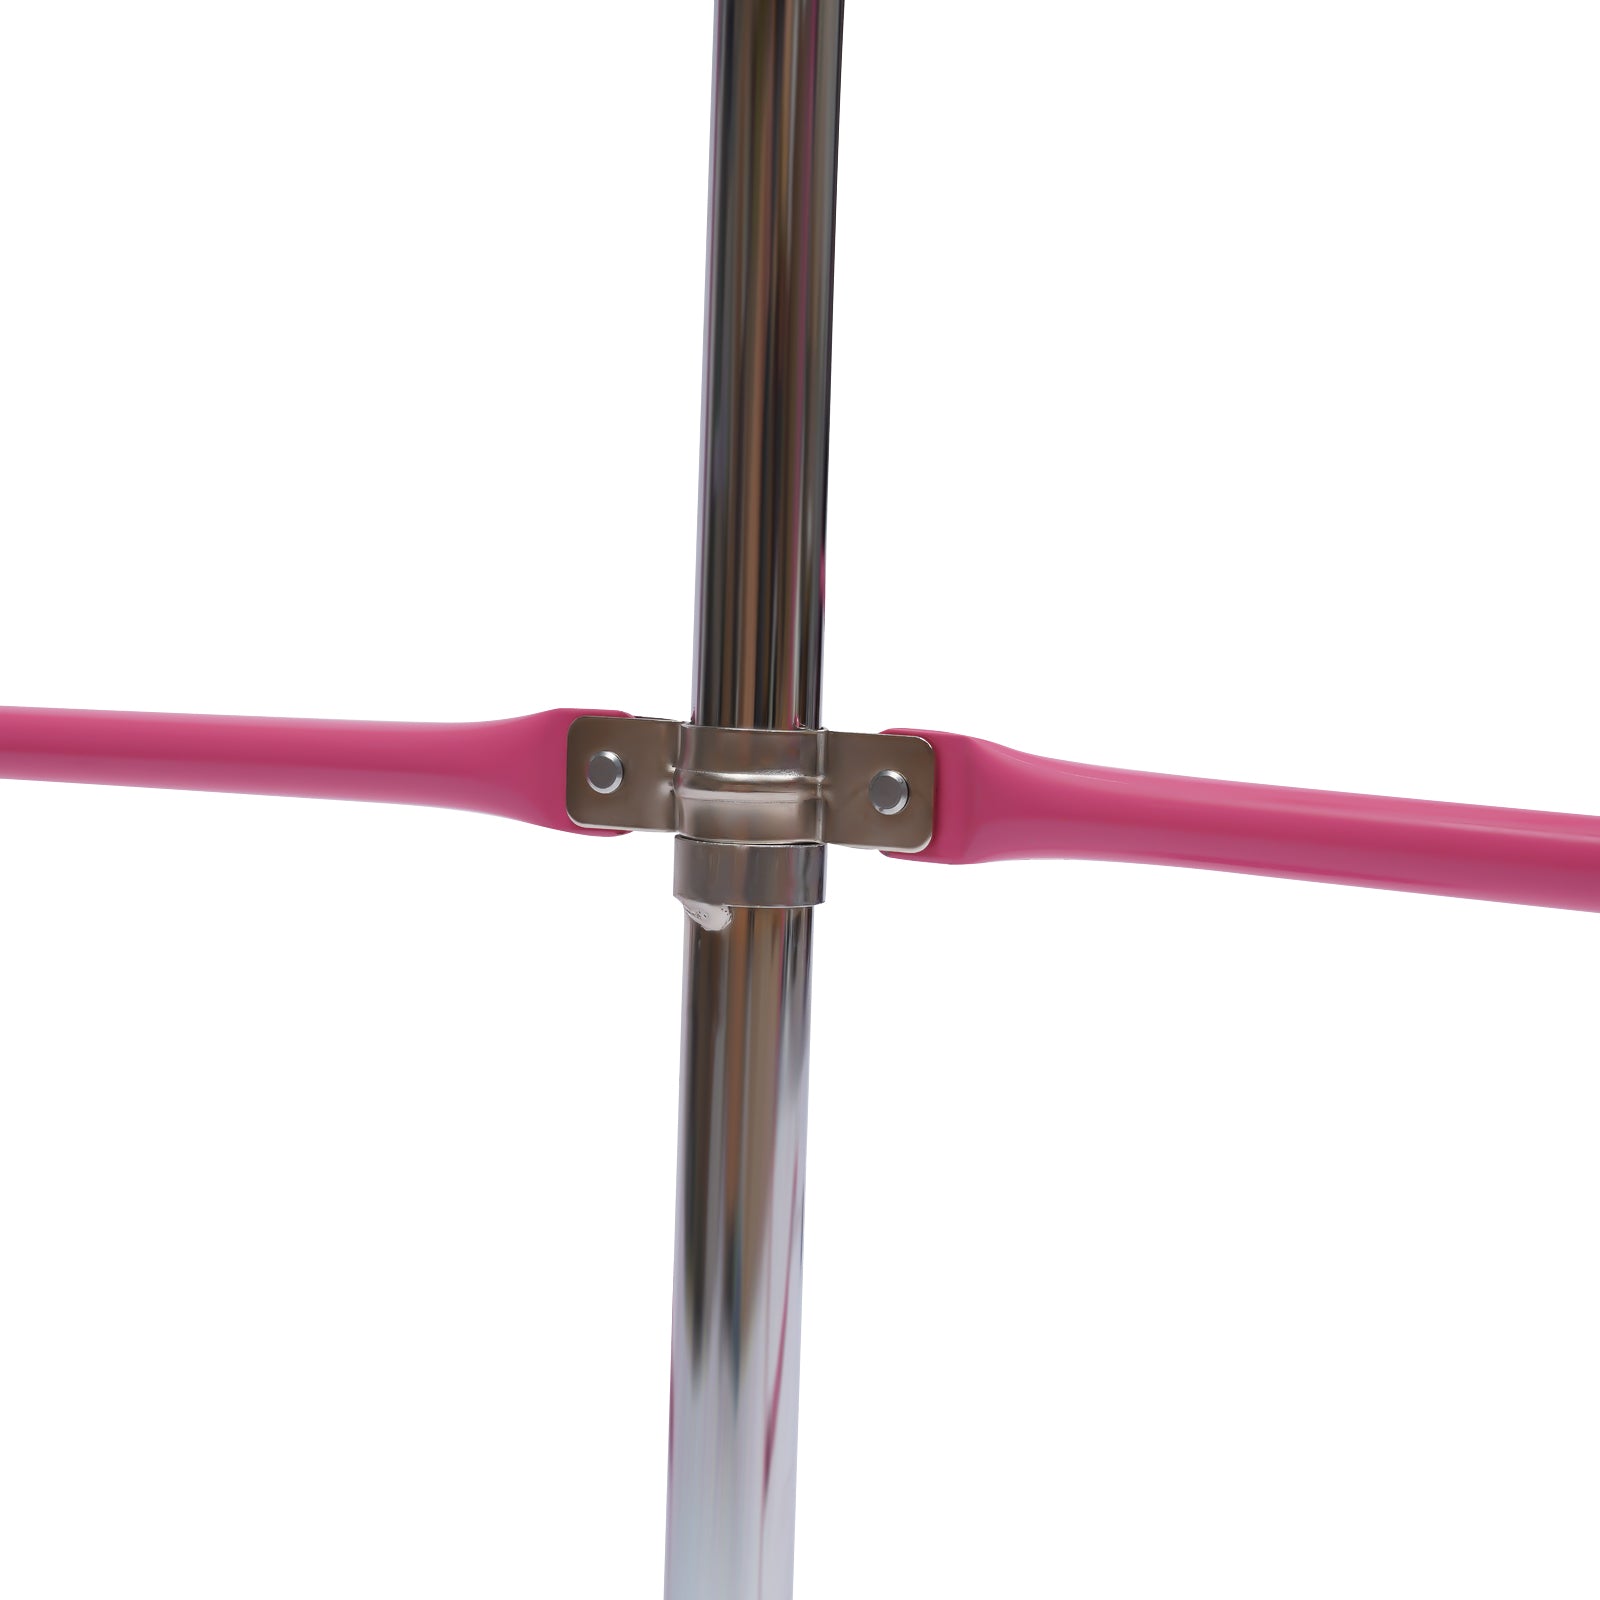 Ginnastica per Bambini, Pala Pieghevole, Barra Orizzontale per Ginnastica altezza regolabile, portata ca. 100 kg, colore: rosa